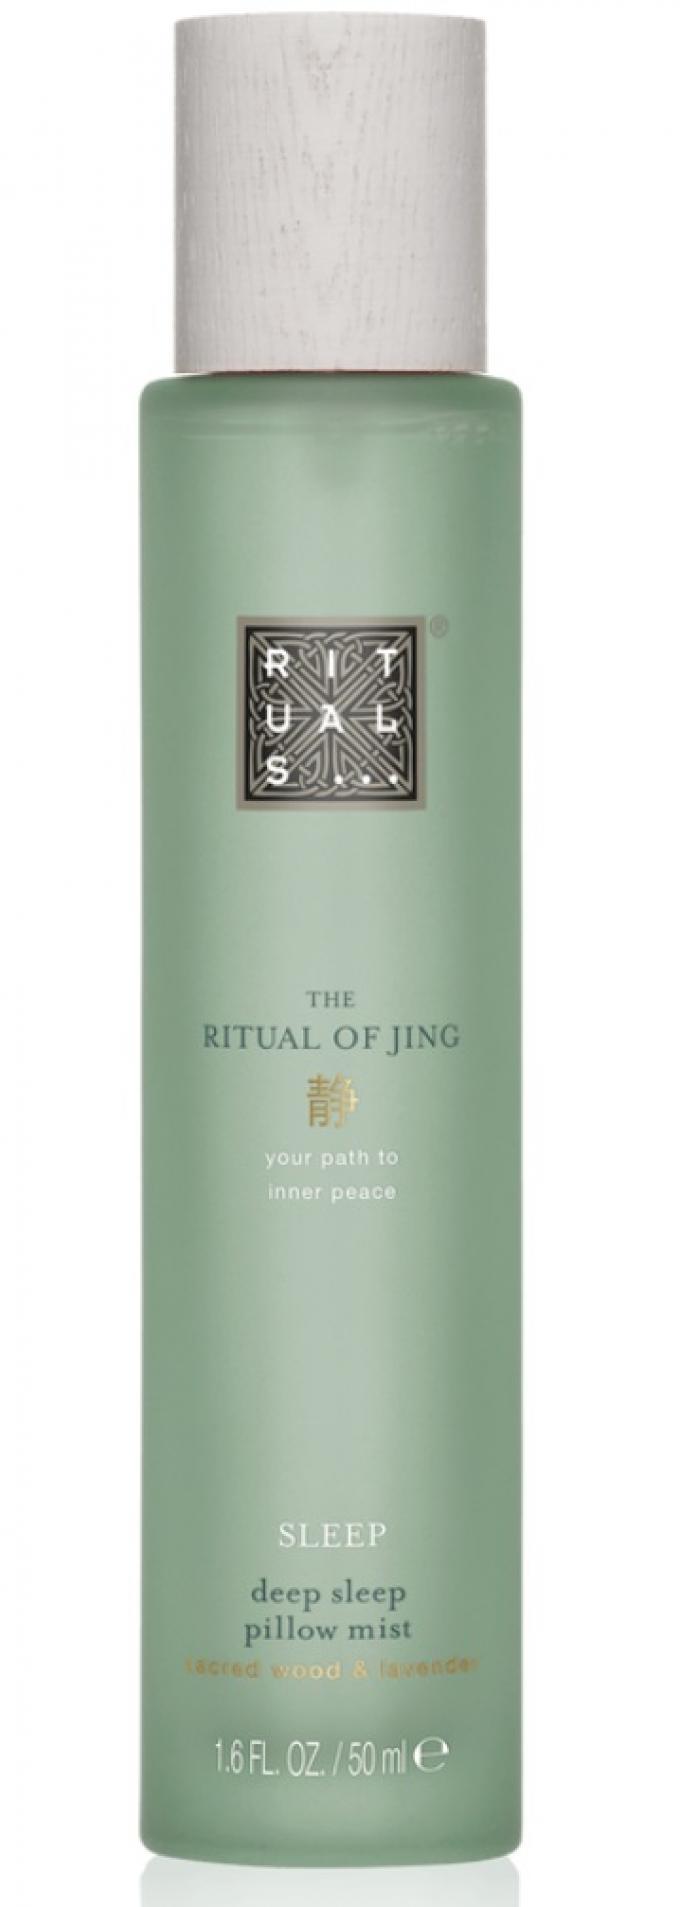 The Ritual of Jing Relax & Sleep de Rituals